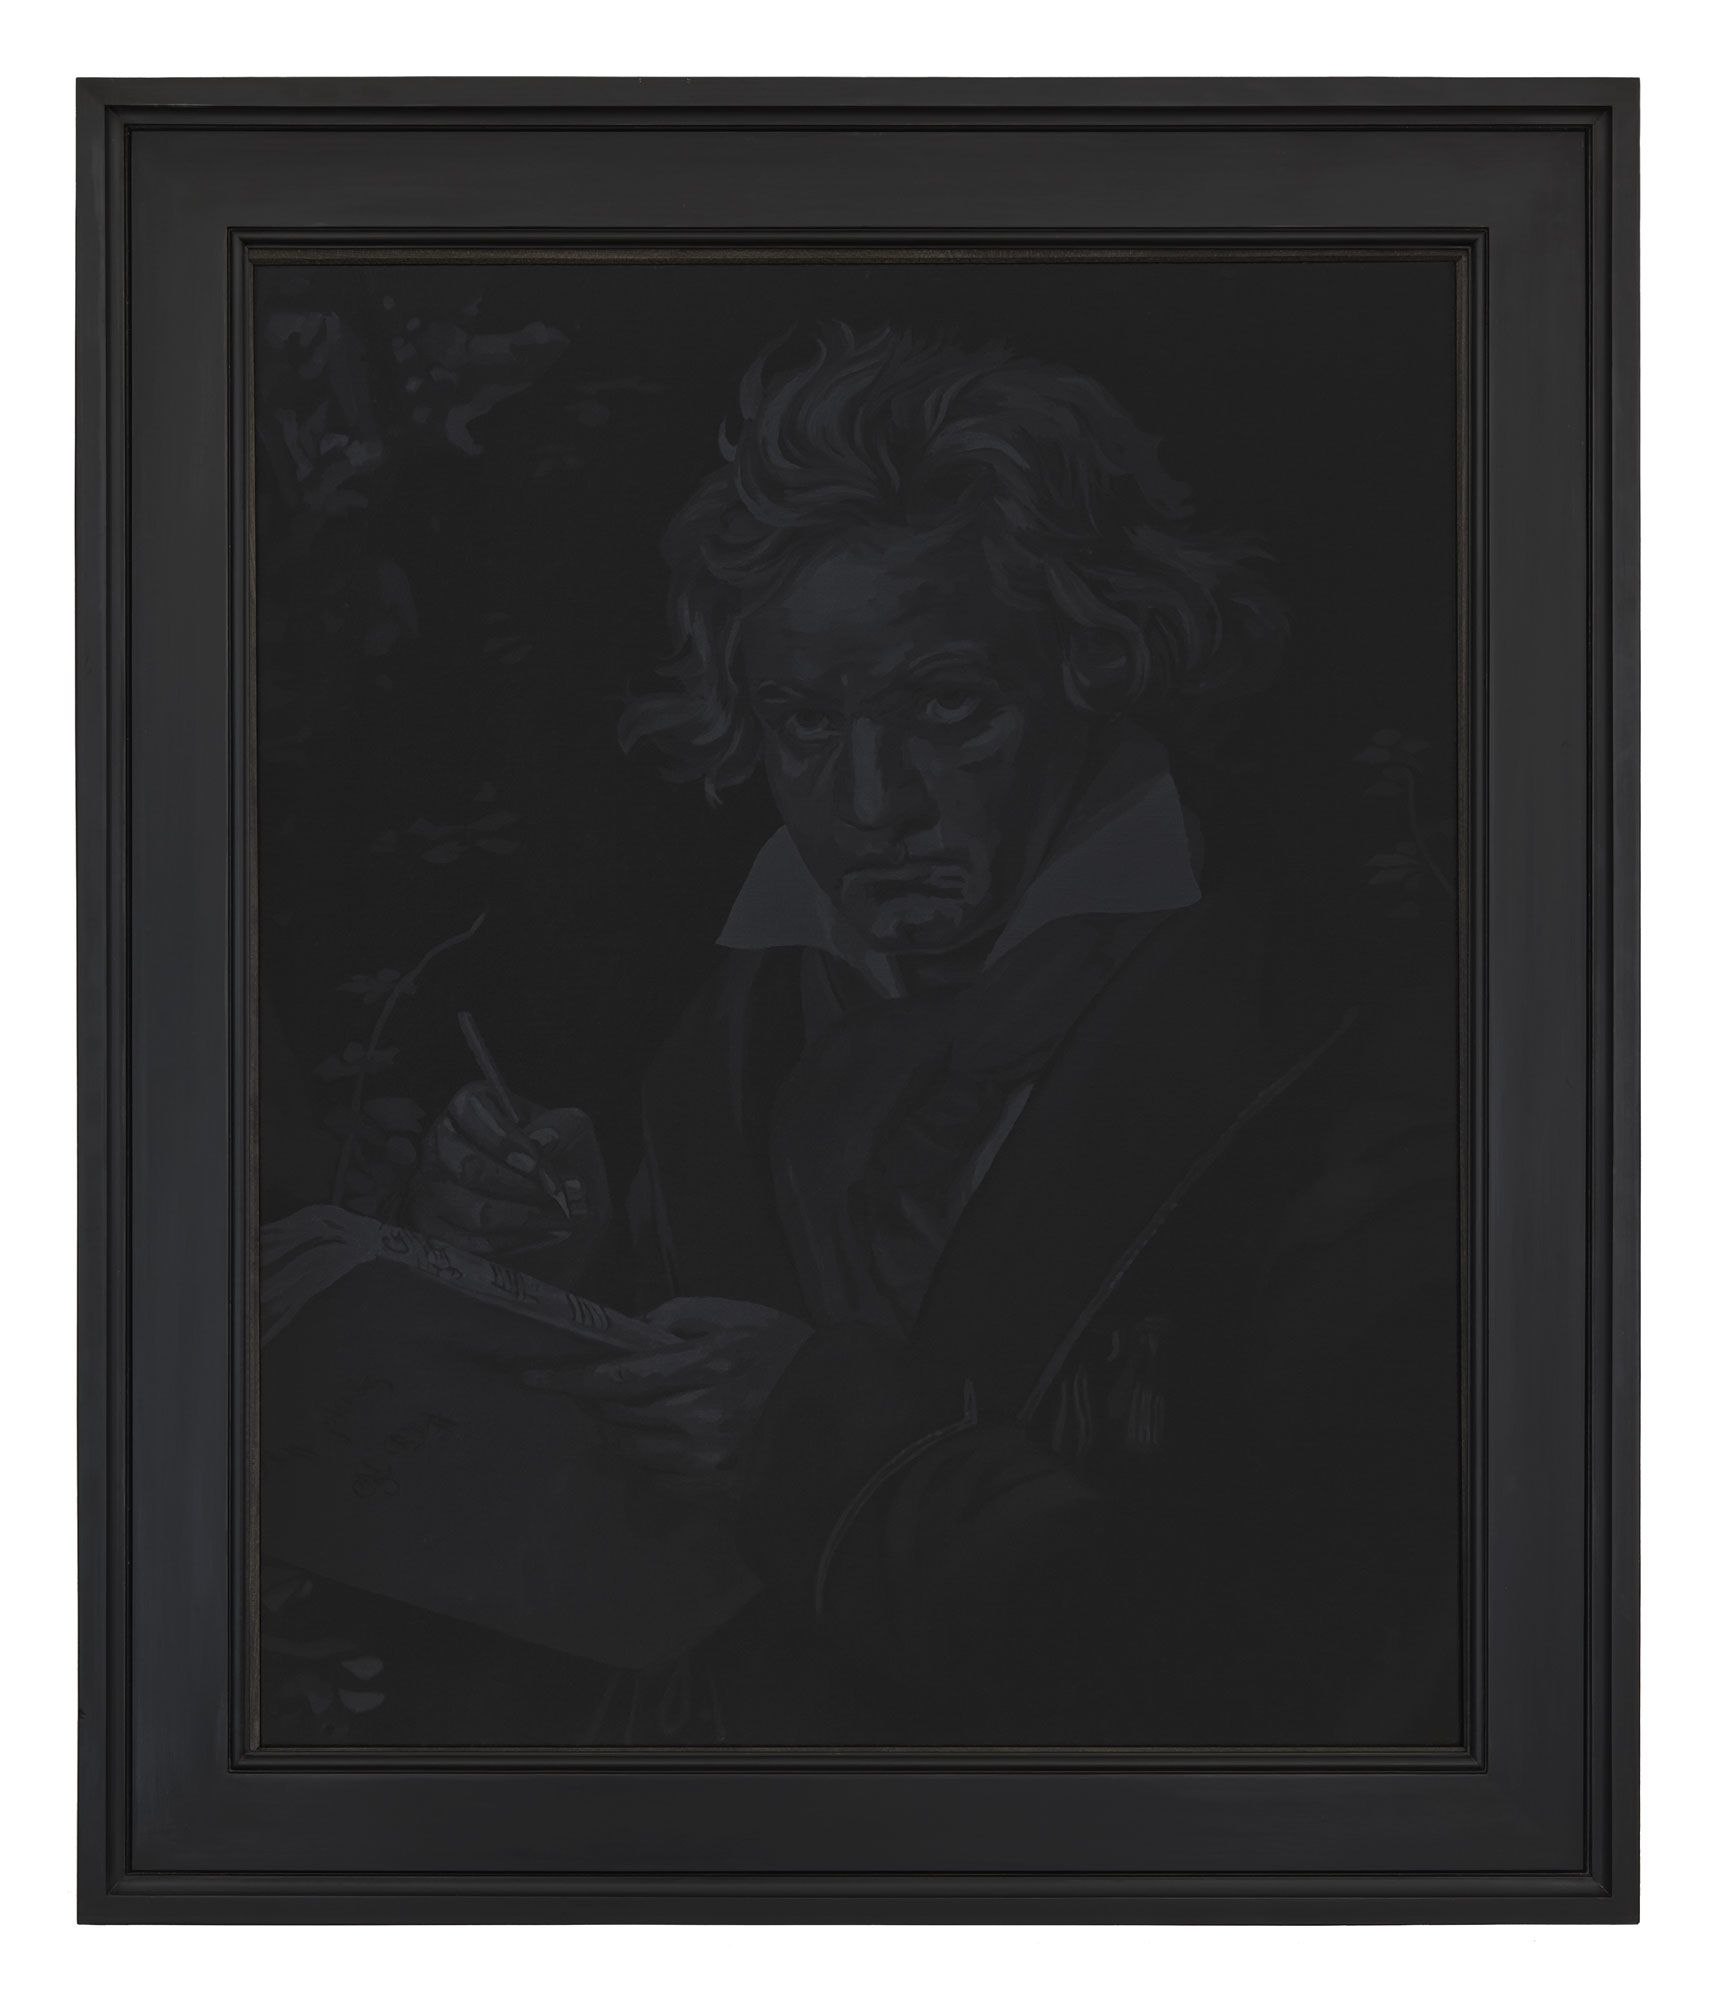 Black oil paining in black frame of Beethoven based on Joseph Karl Stieler classic image.